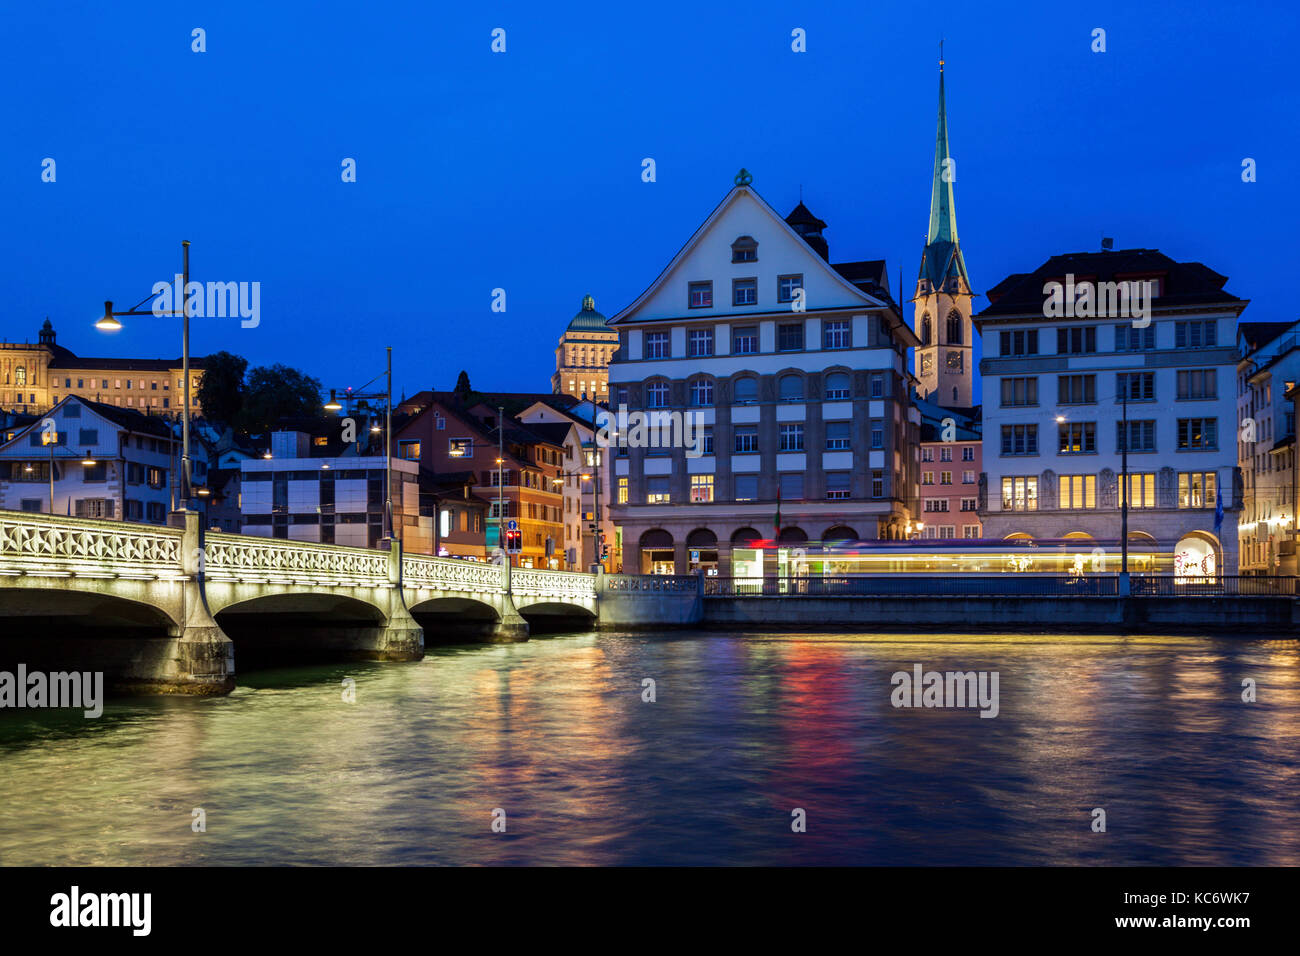 La svizzera, Zurigo, limmat di notte Foto Stock